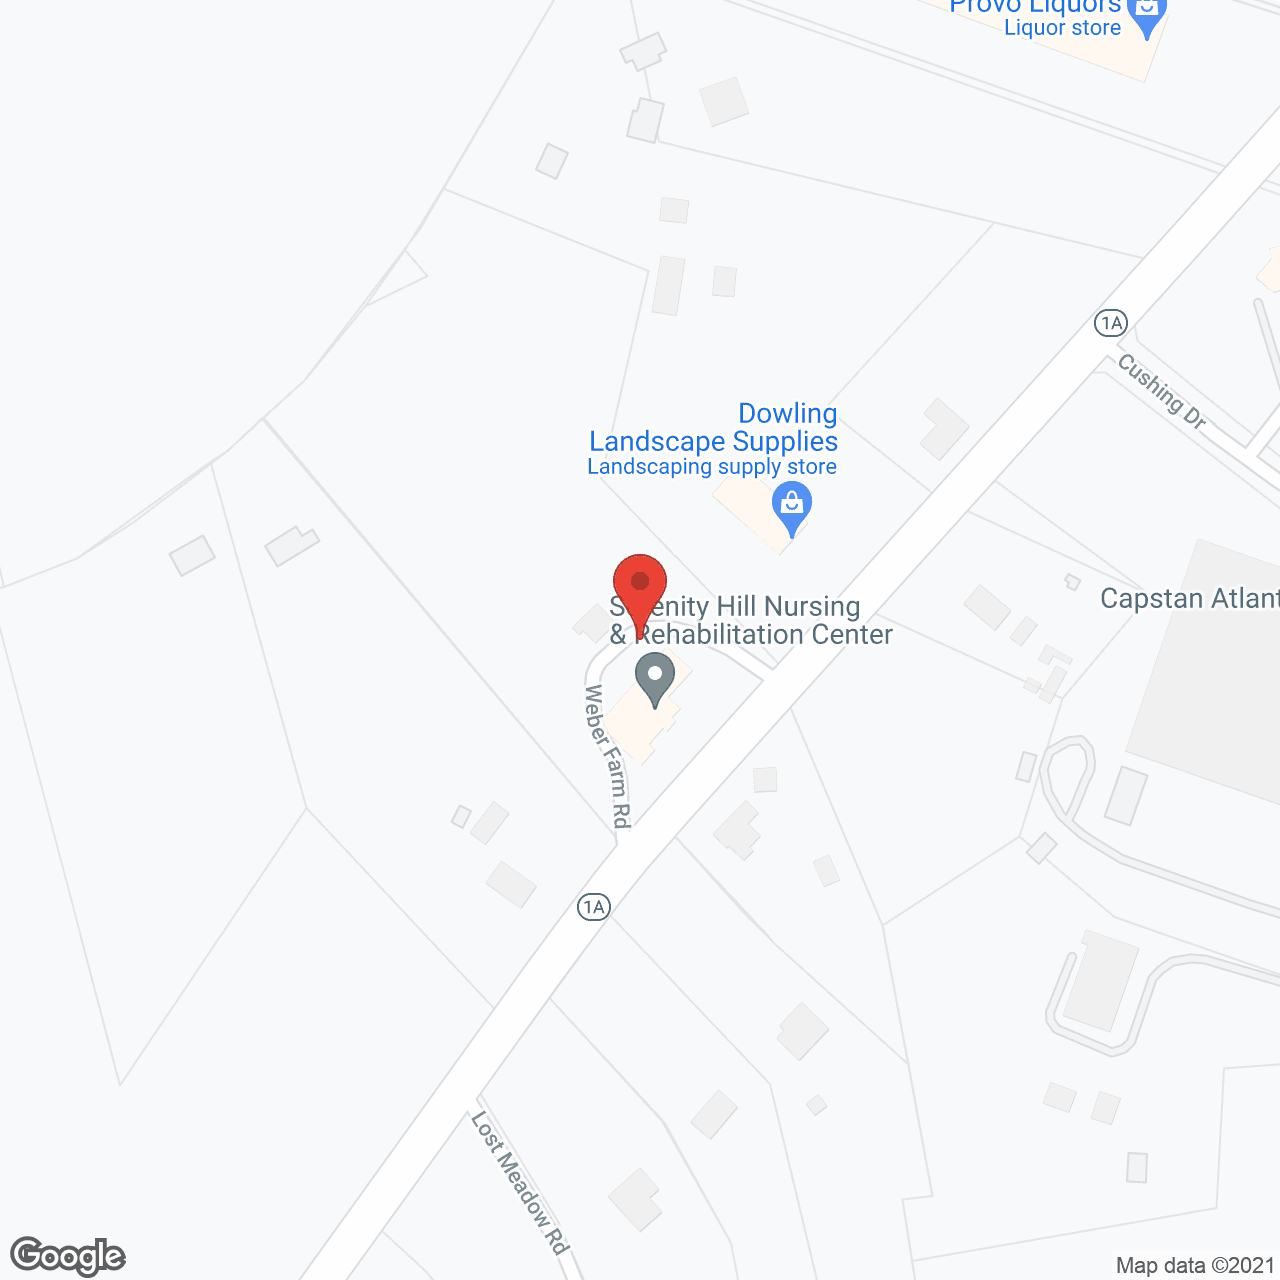 Serenity Hill Nursing & Rehabilitation Center in google map